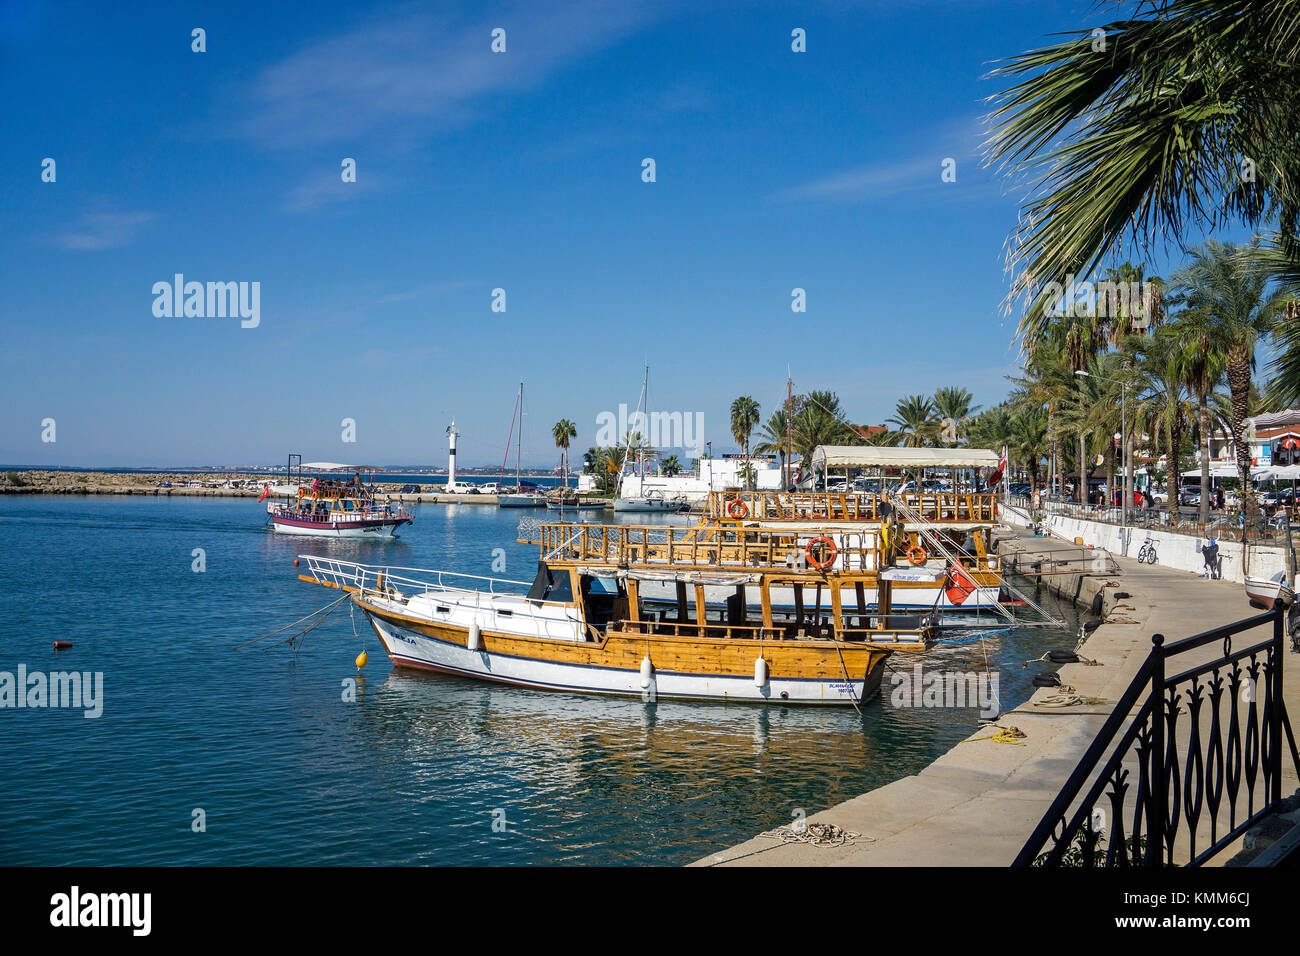 Excursiones en barco en el puerto de lado, Riviera turca, Turquía Foto de stock